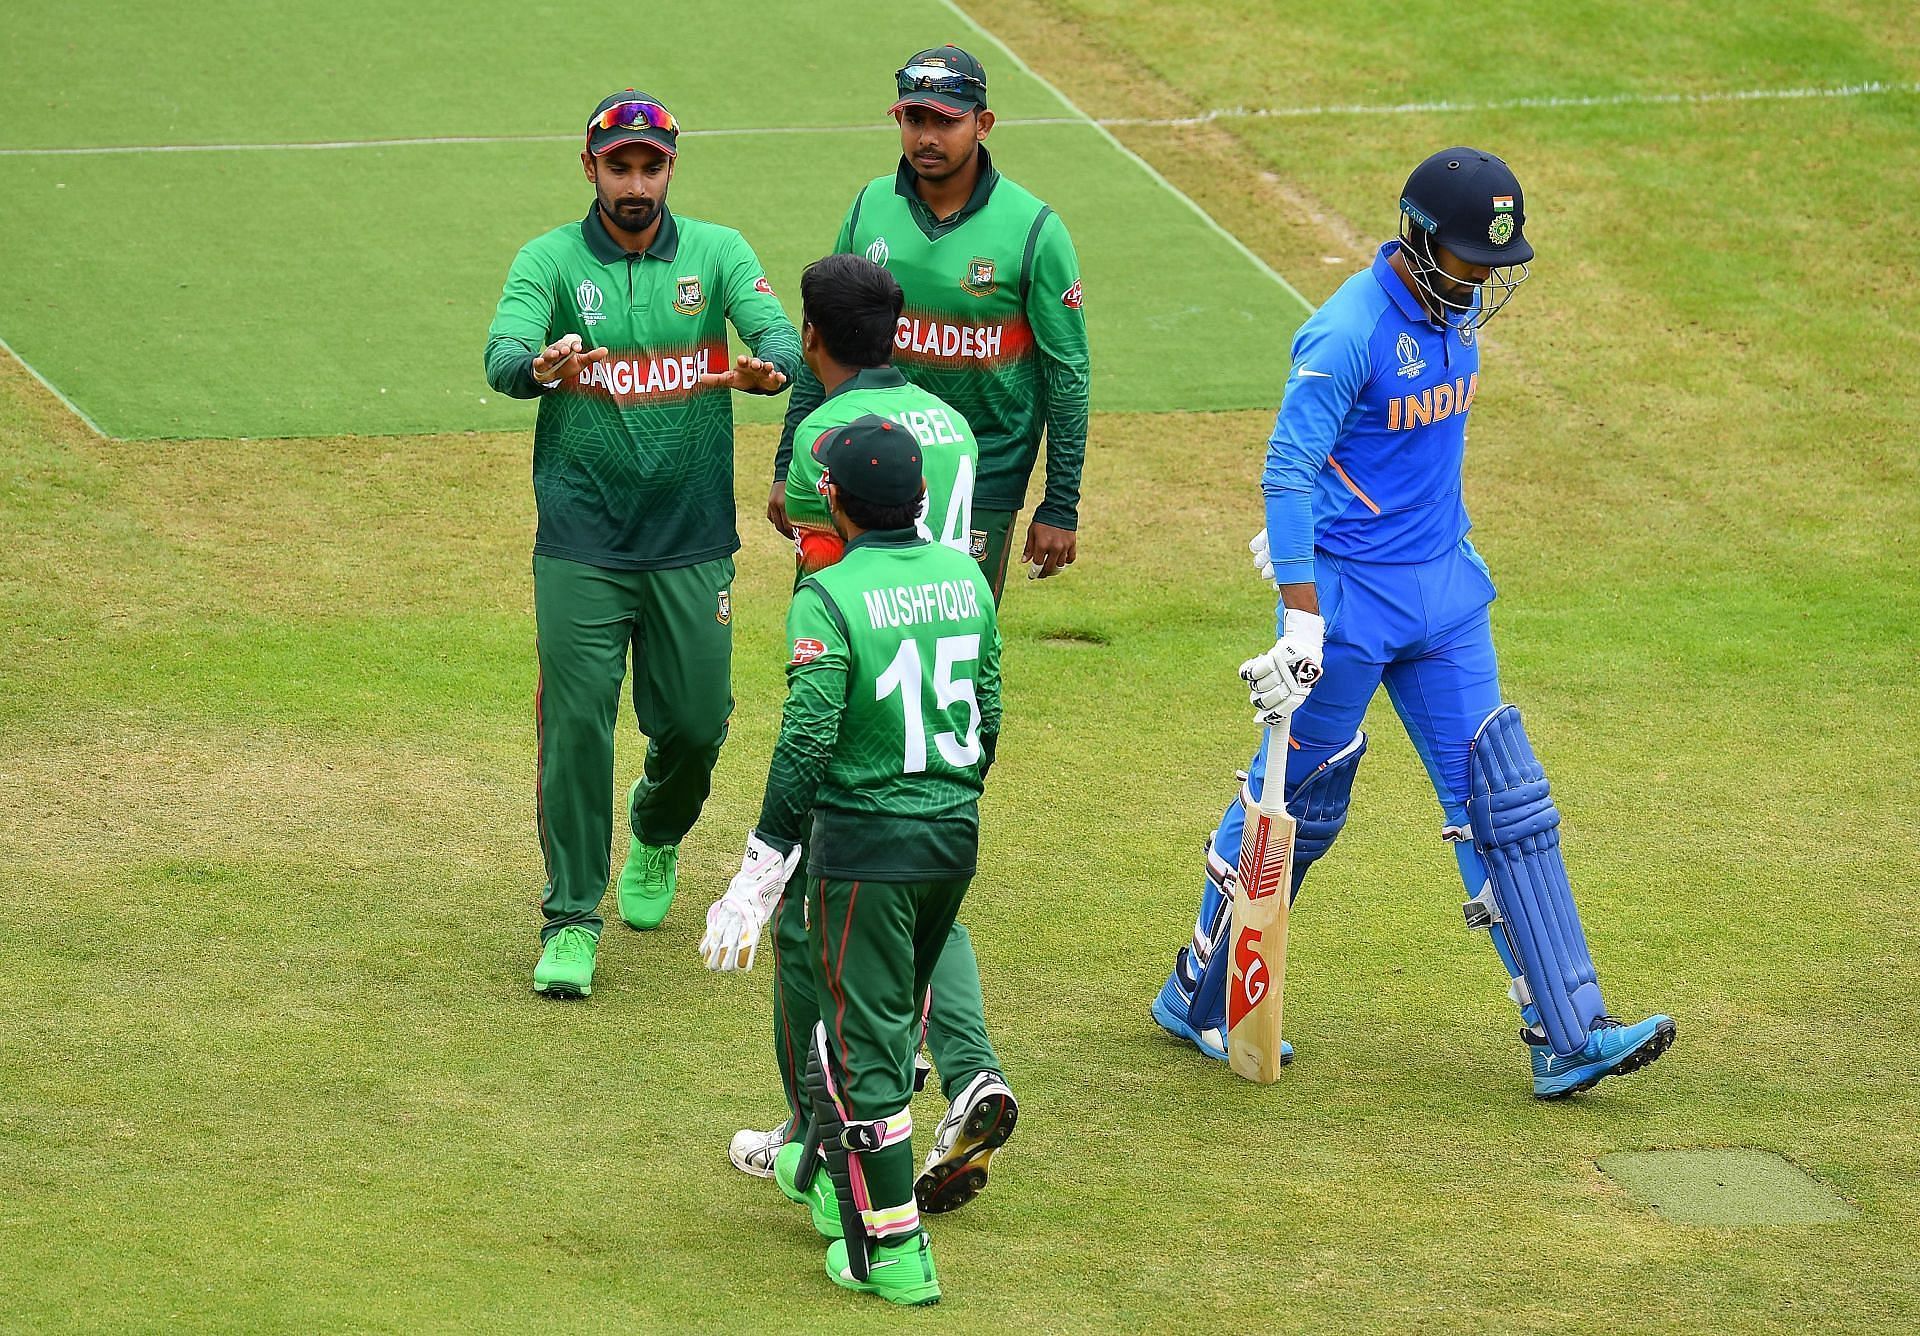 भारत और बांग्लादेश दोनों का परफॉर्मेंस टी20 वर्ल्ड कप में काफी खराब रहा